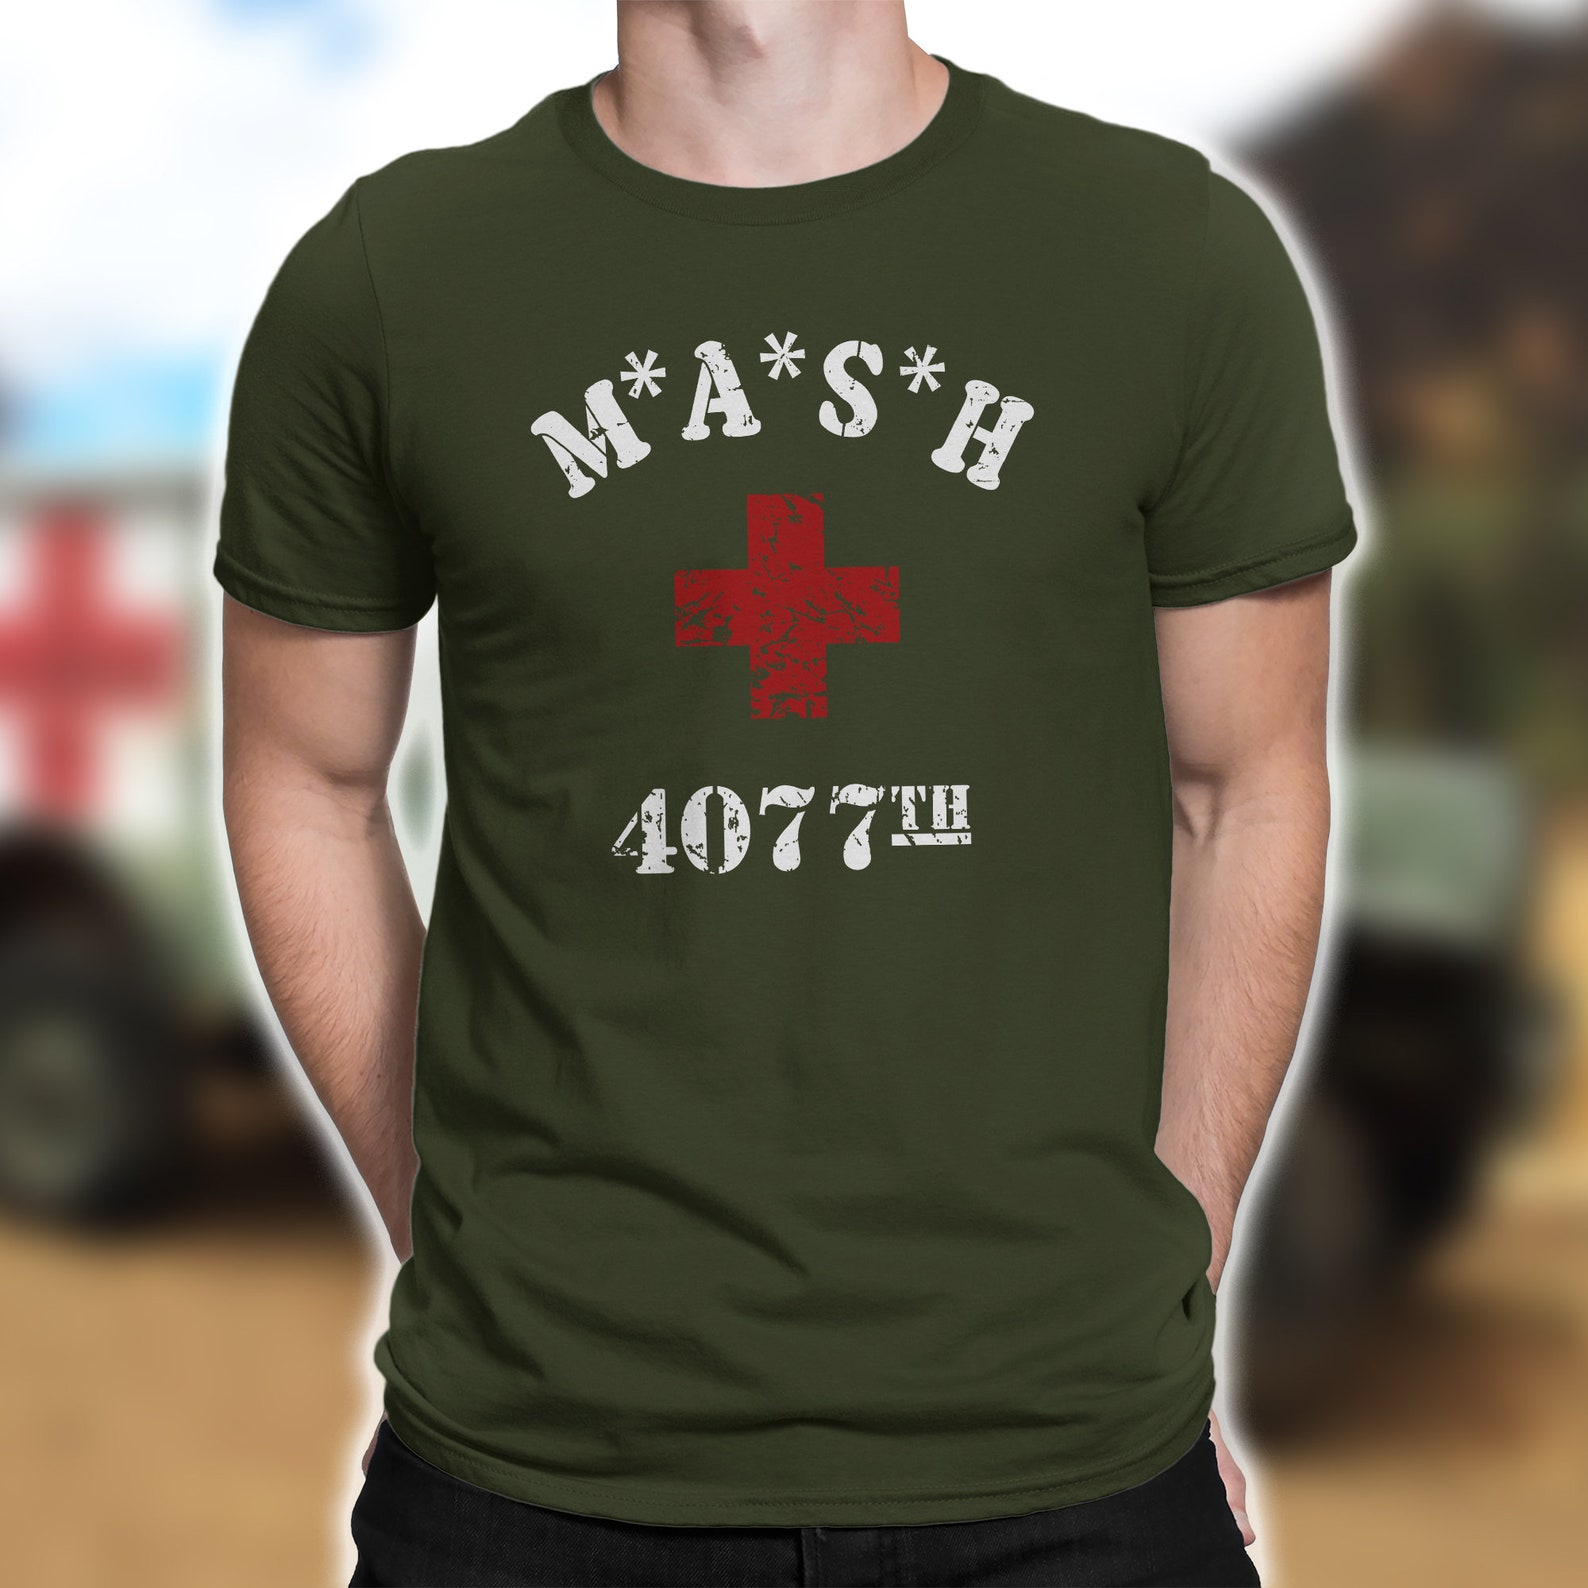 Футболка 4077. Футболка Mash 4077th. Mash 4077 Shirt. Футболка HAPPYFOX Military.